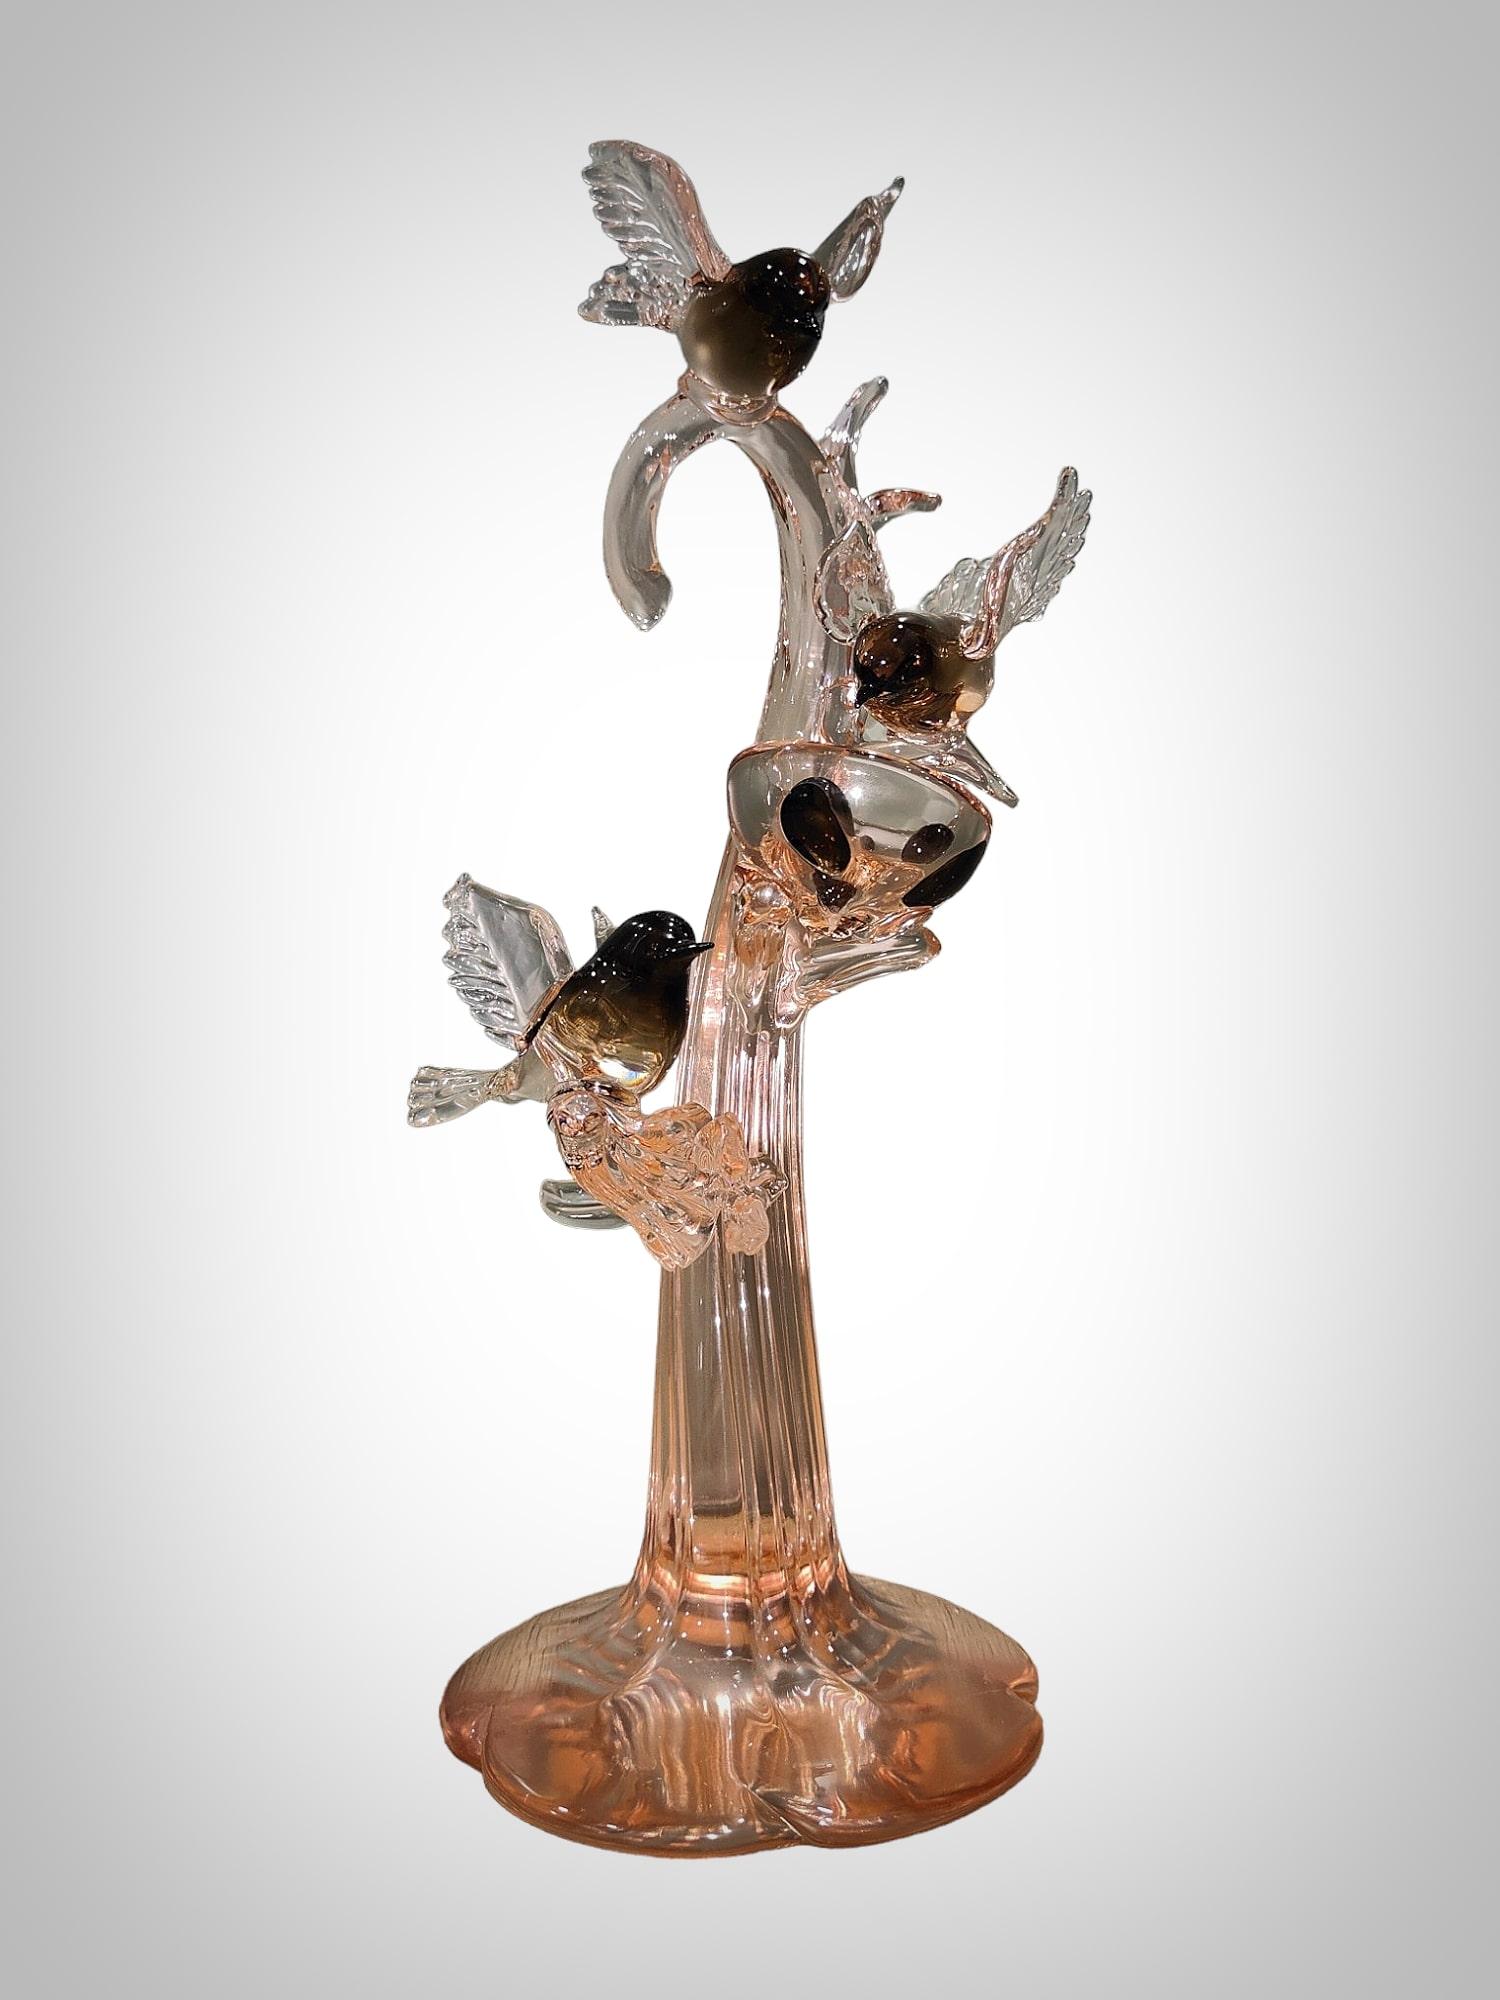 Wir präsentieren eine außergewöhnliche Skulptur aus Murano-Glas, signiert von dem bekannten Künstler Pino Signoretto. Dieses elegante Kunstwerk fängt die Essenz des Murano-Glases ein und stellt einen bezaubernden Baum mit Vögeln dar, ein